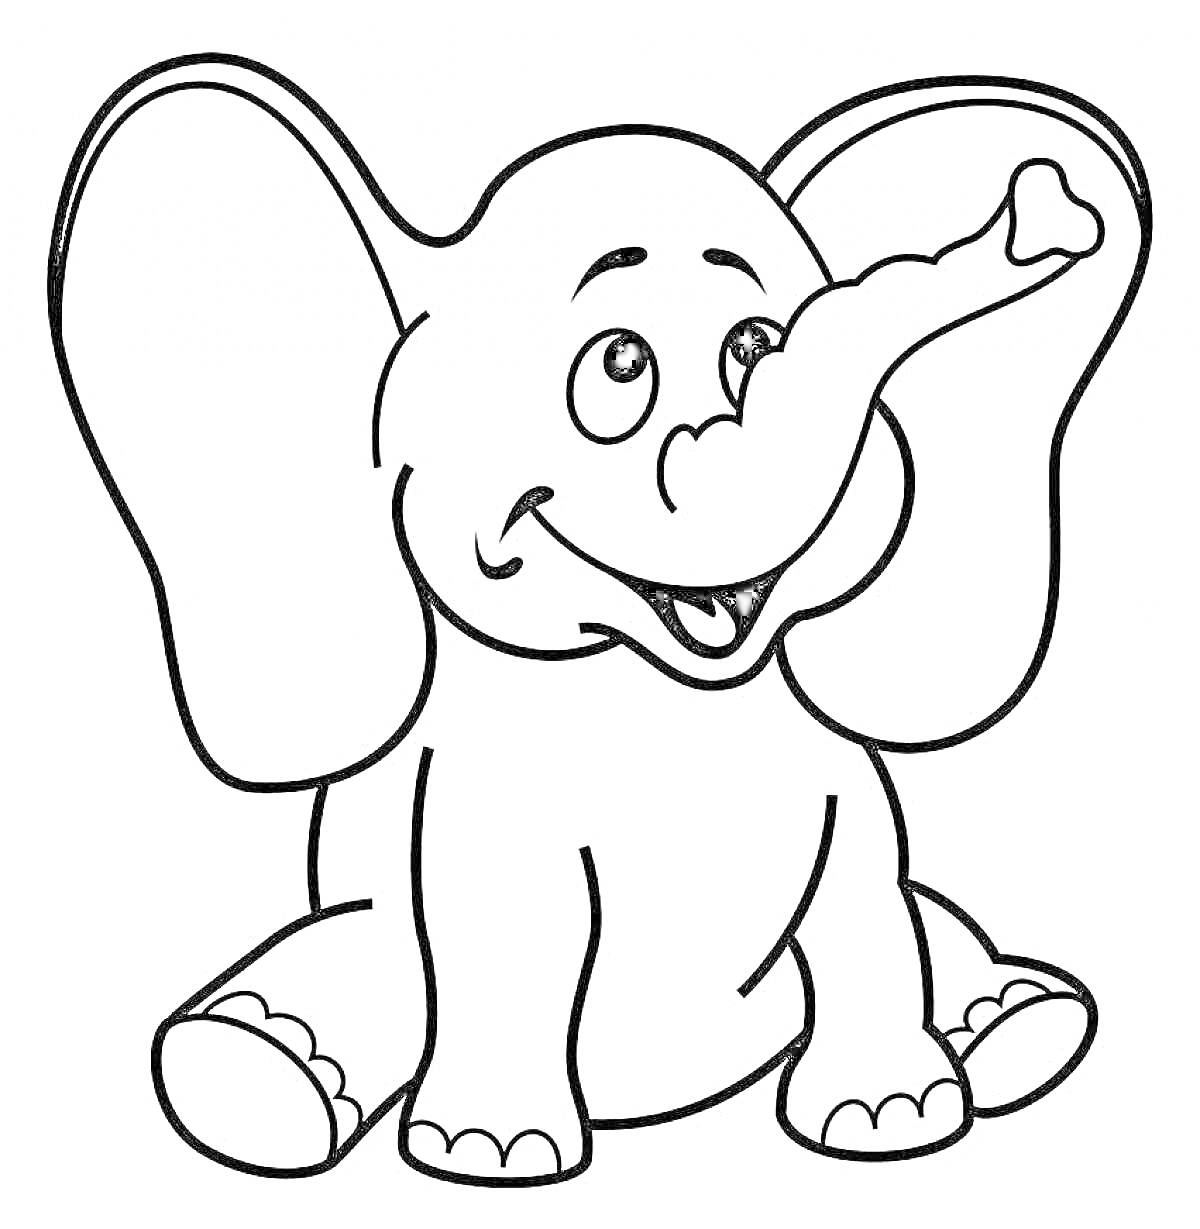 Раскраска слоник с большими ушами и поднятым хоботом, сидящий